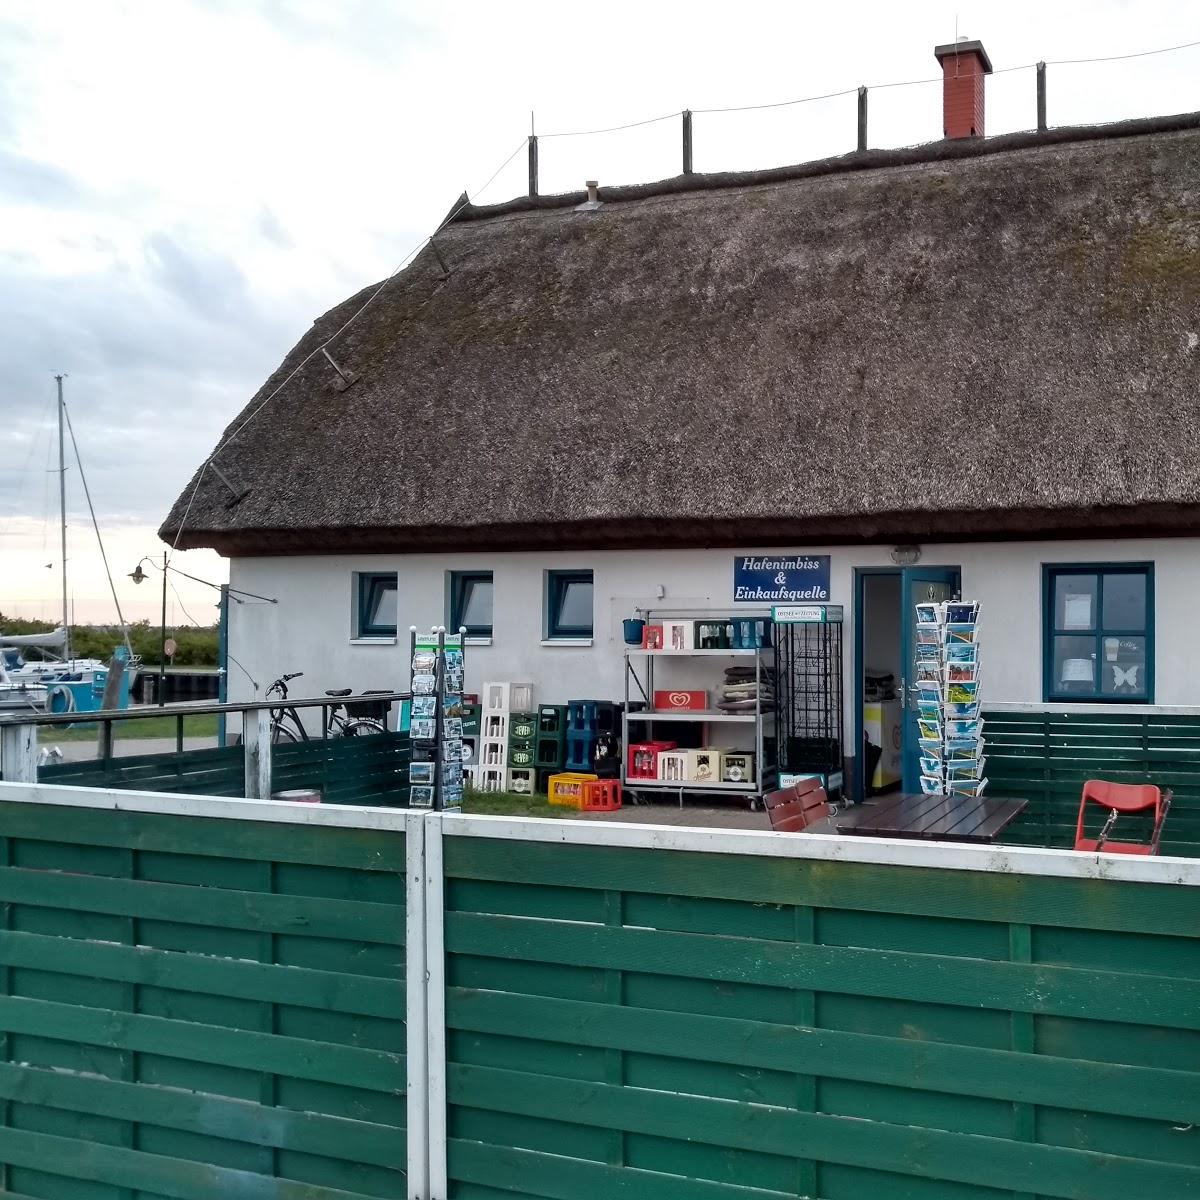 Restaurant "Claudius Hafenoase" in Insel Hiddensee